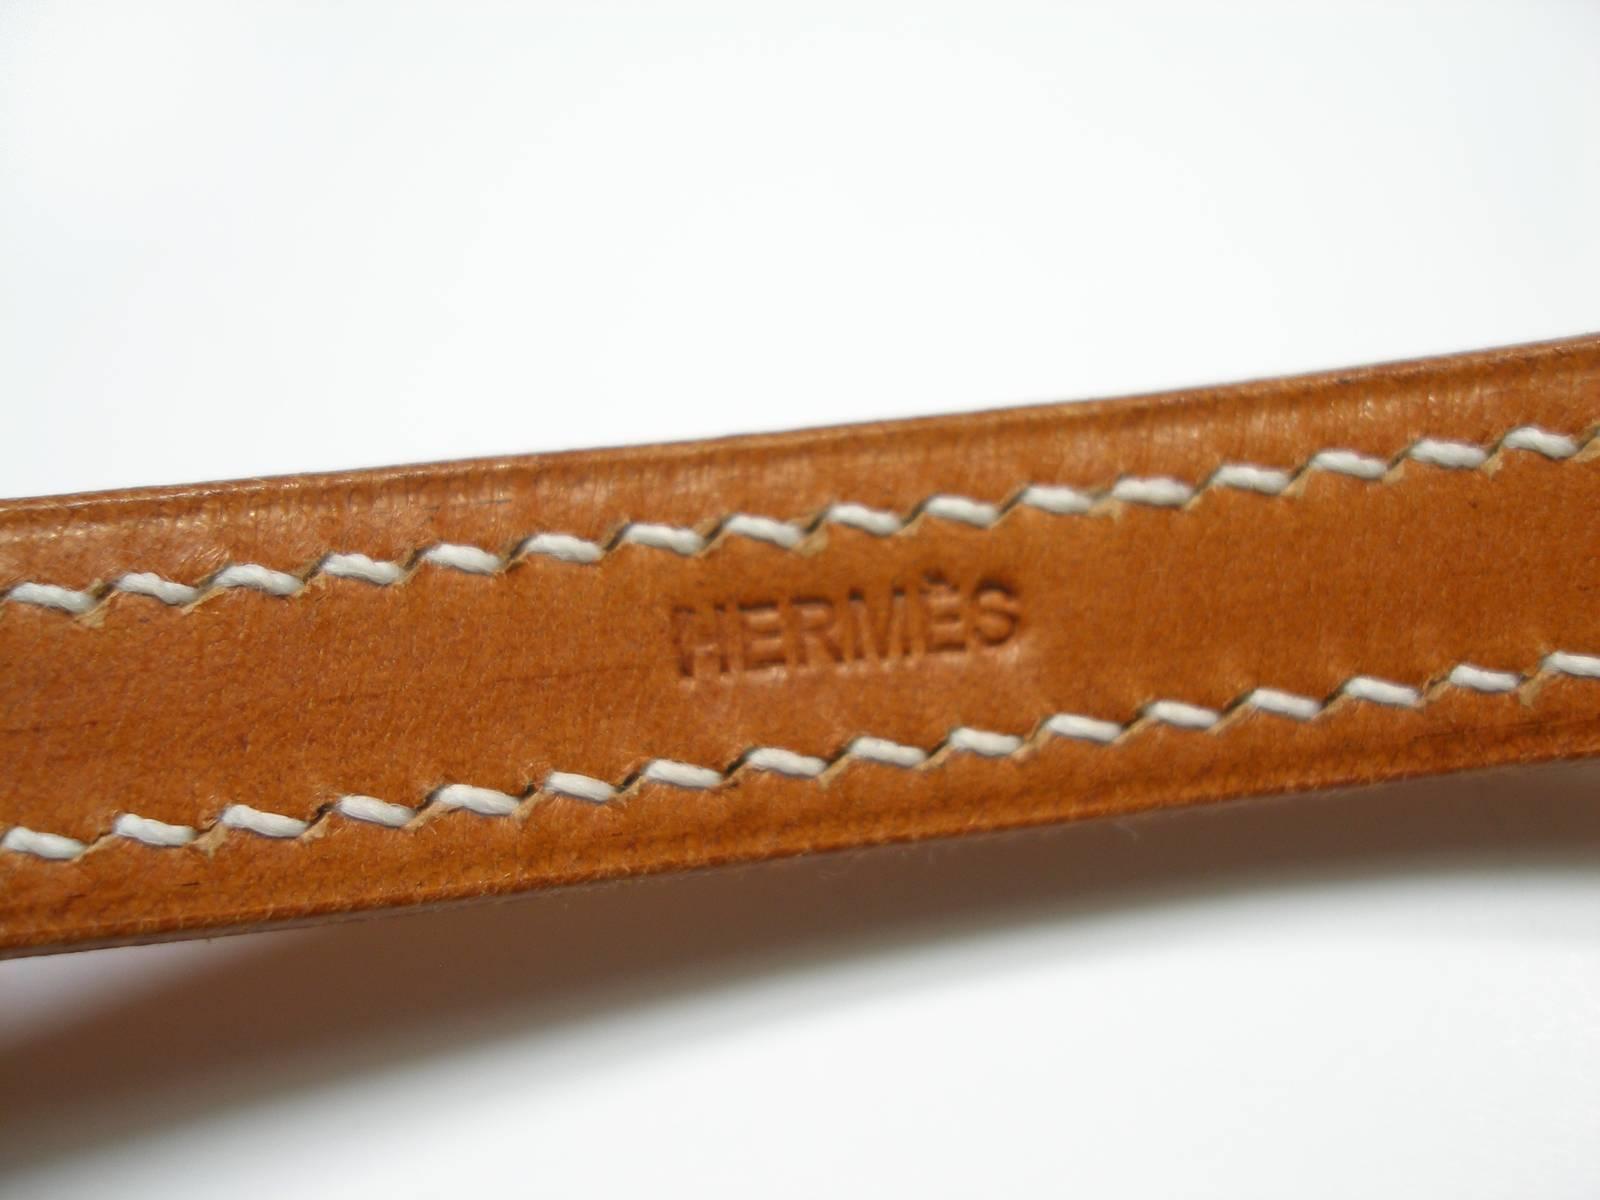 Circa's 2005 Hermès Bracelet Boucle Sellier Silver 925 &Barenia Leather / L Size 3